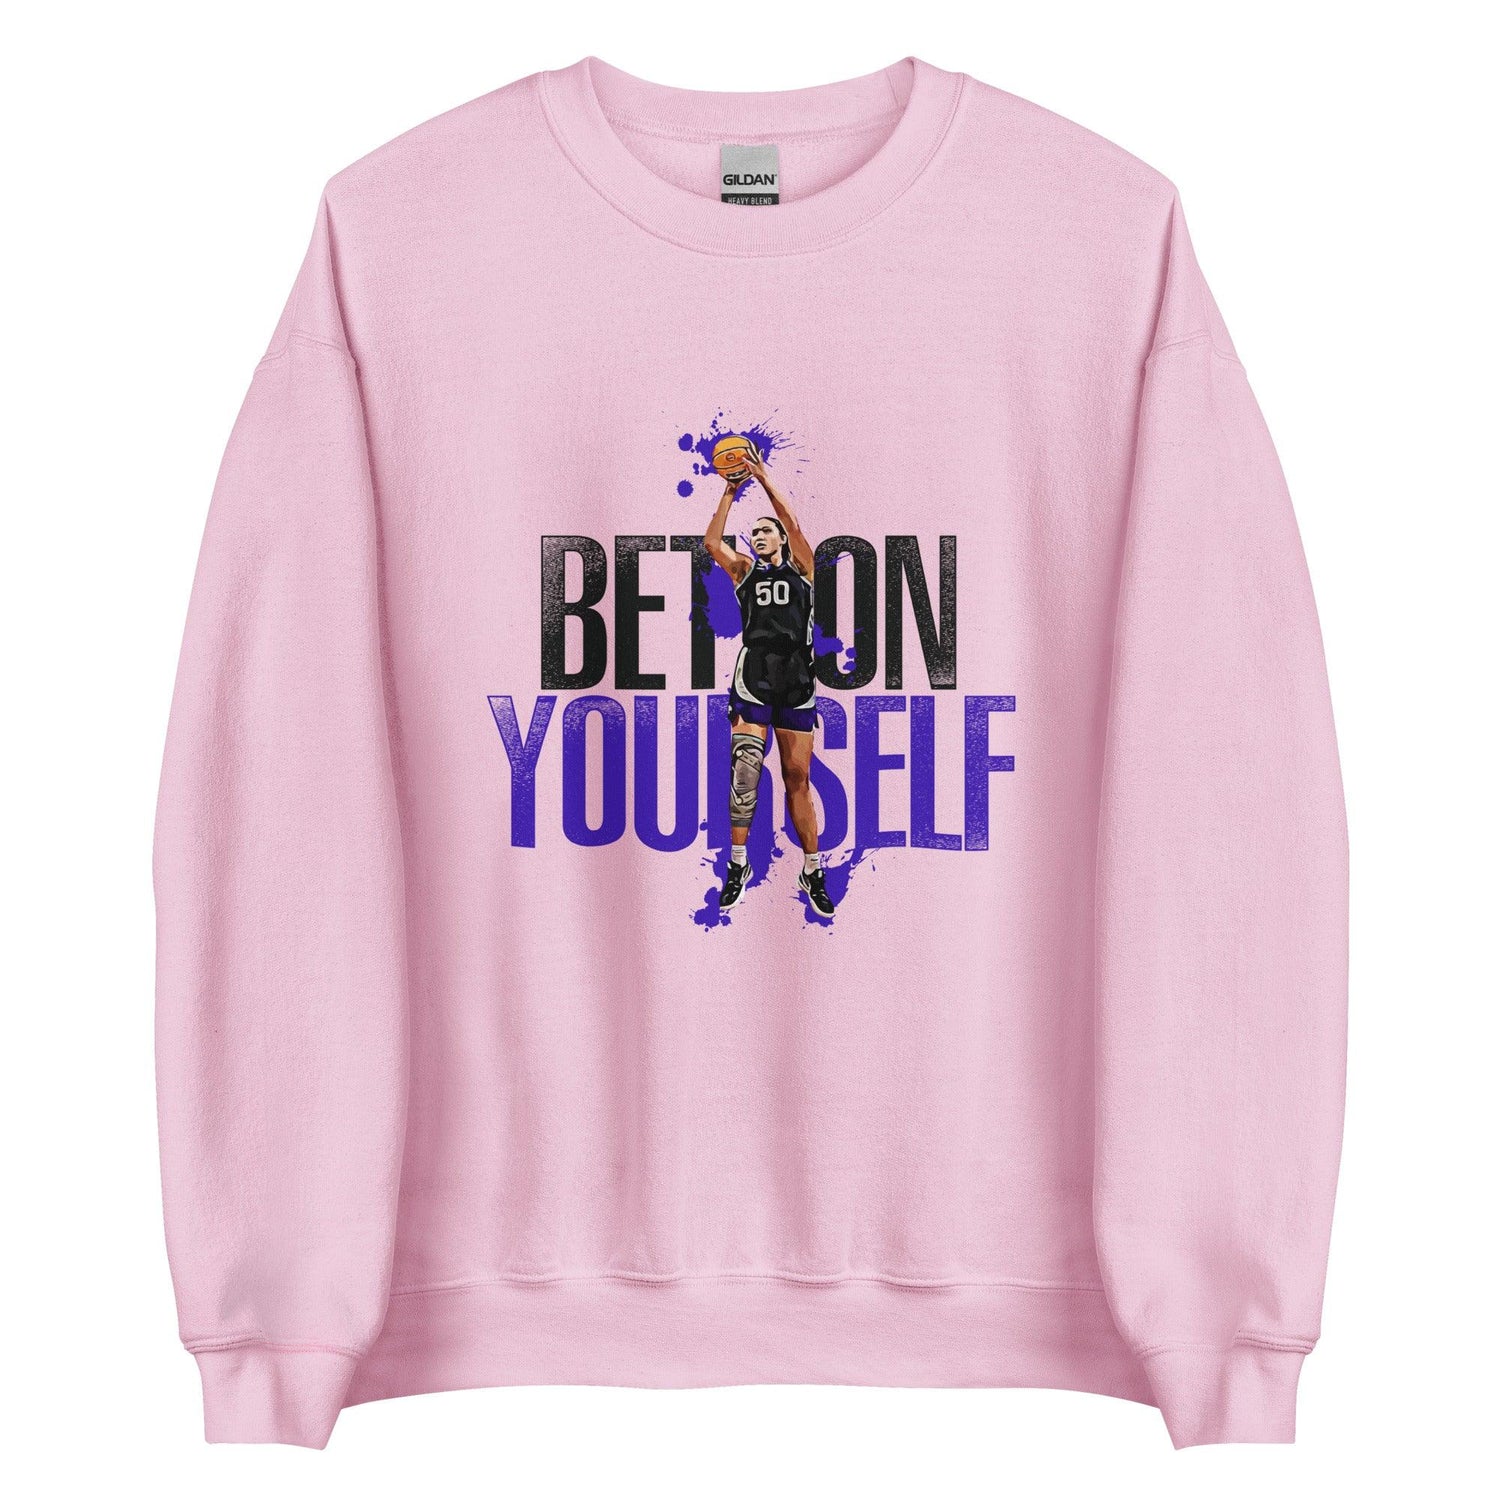 Ayoka Lee "Bet On Yourself" Sweatshirt - Fan Arch